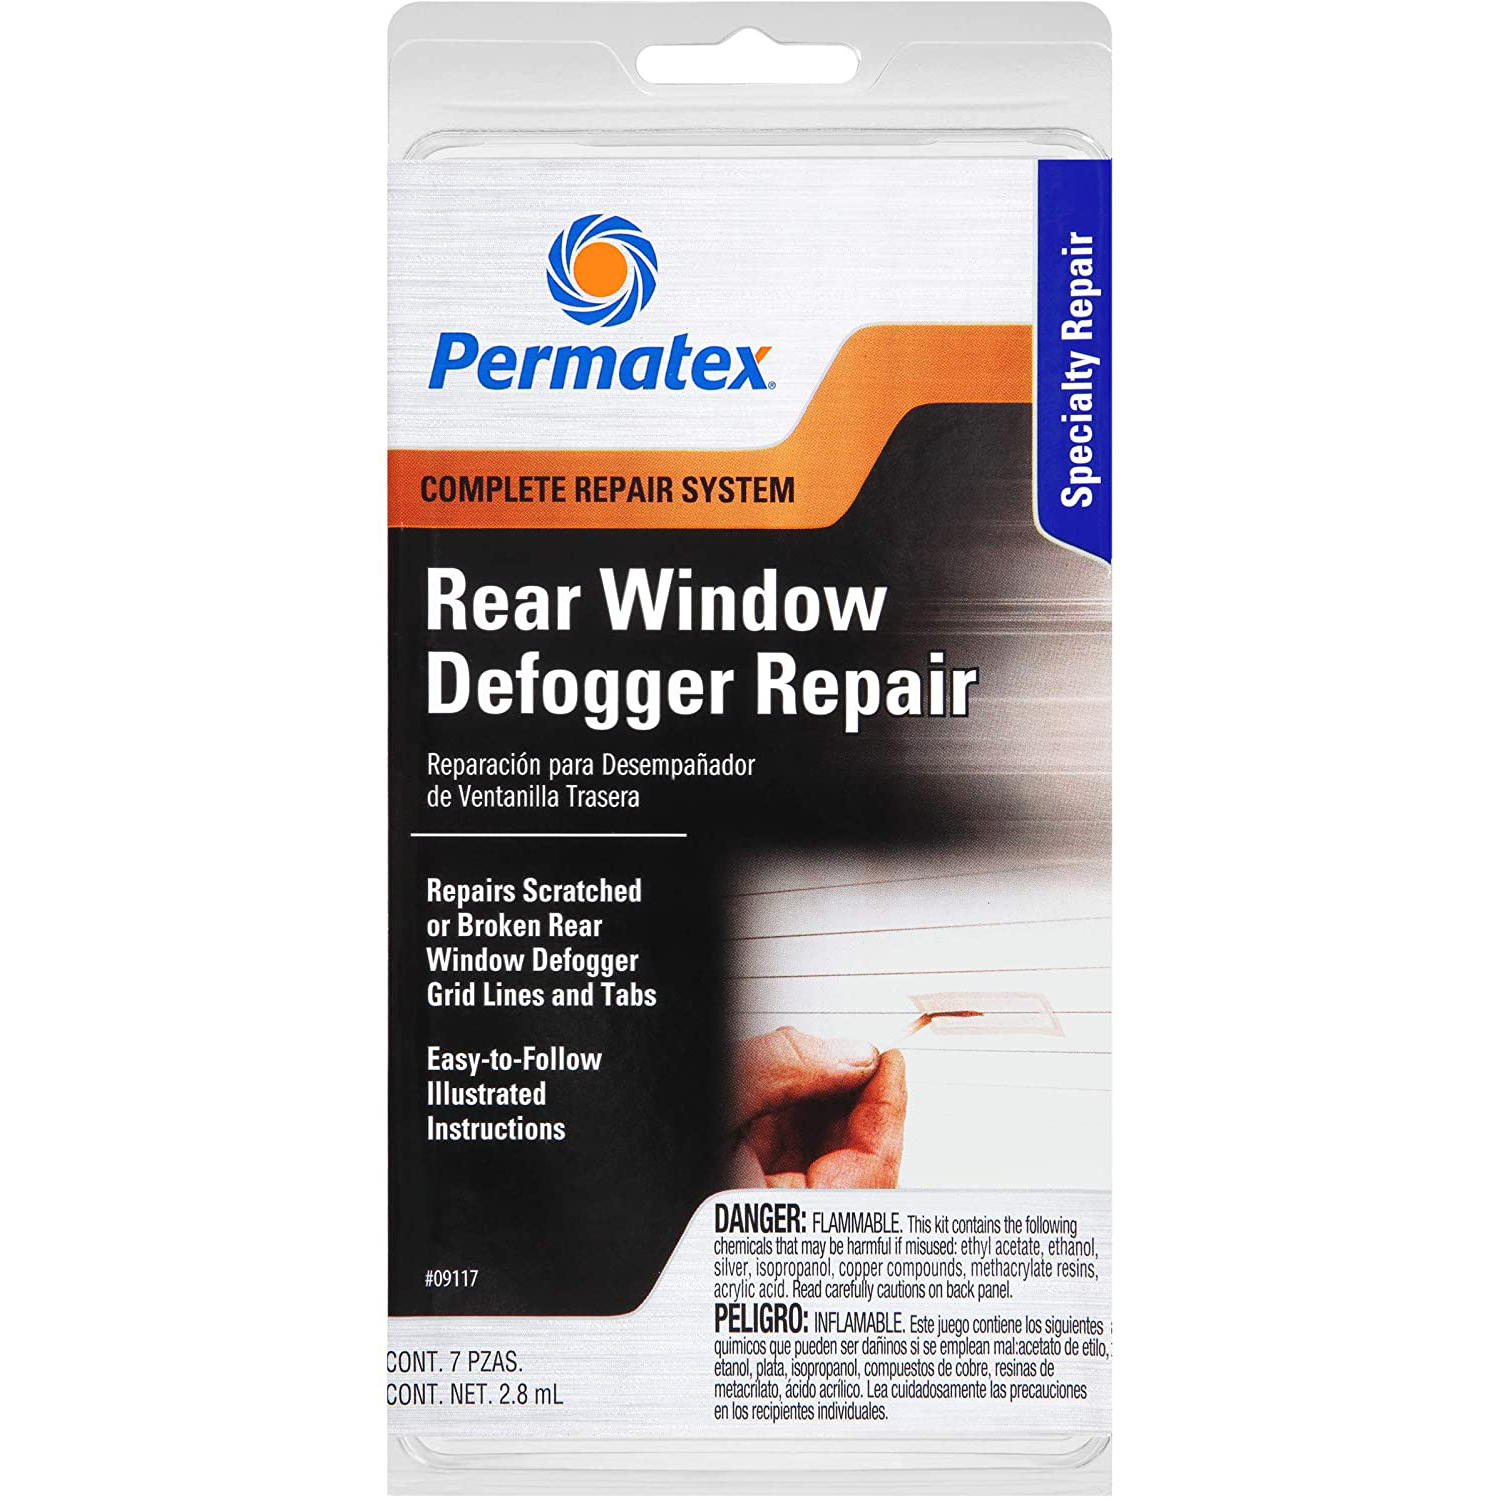 Rear window defogger repair kit